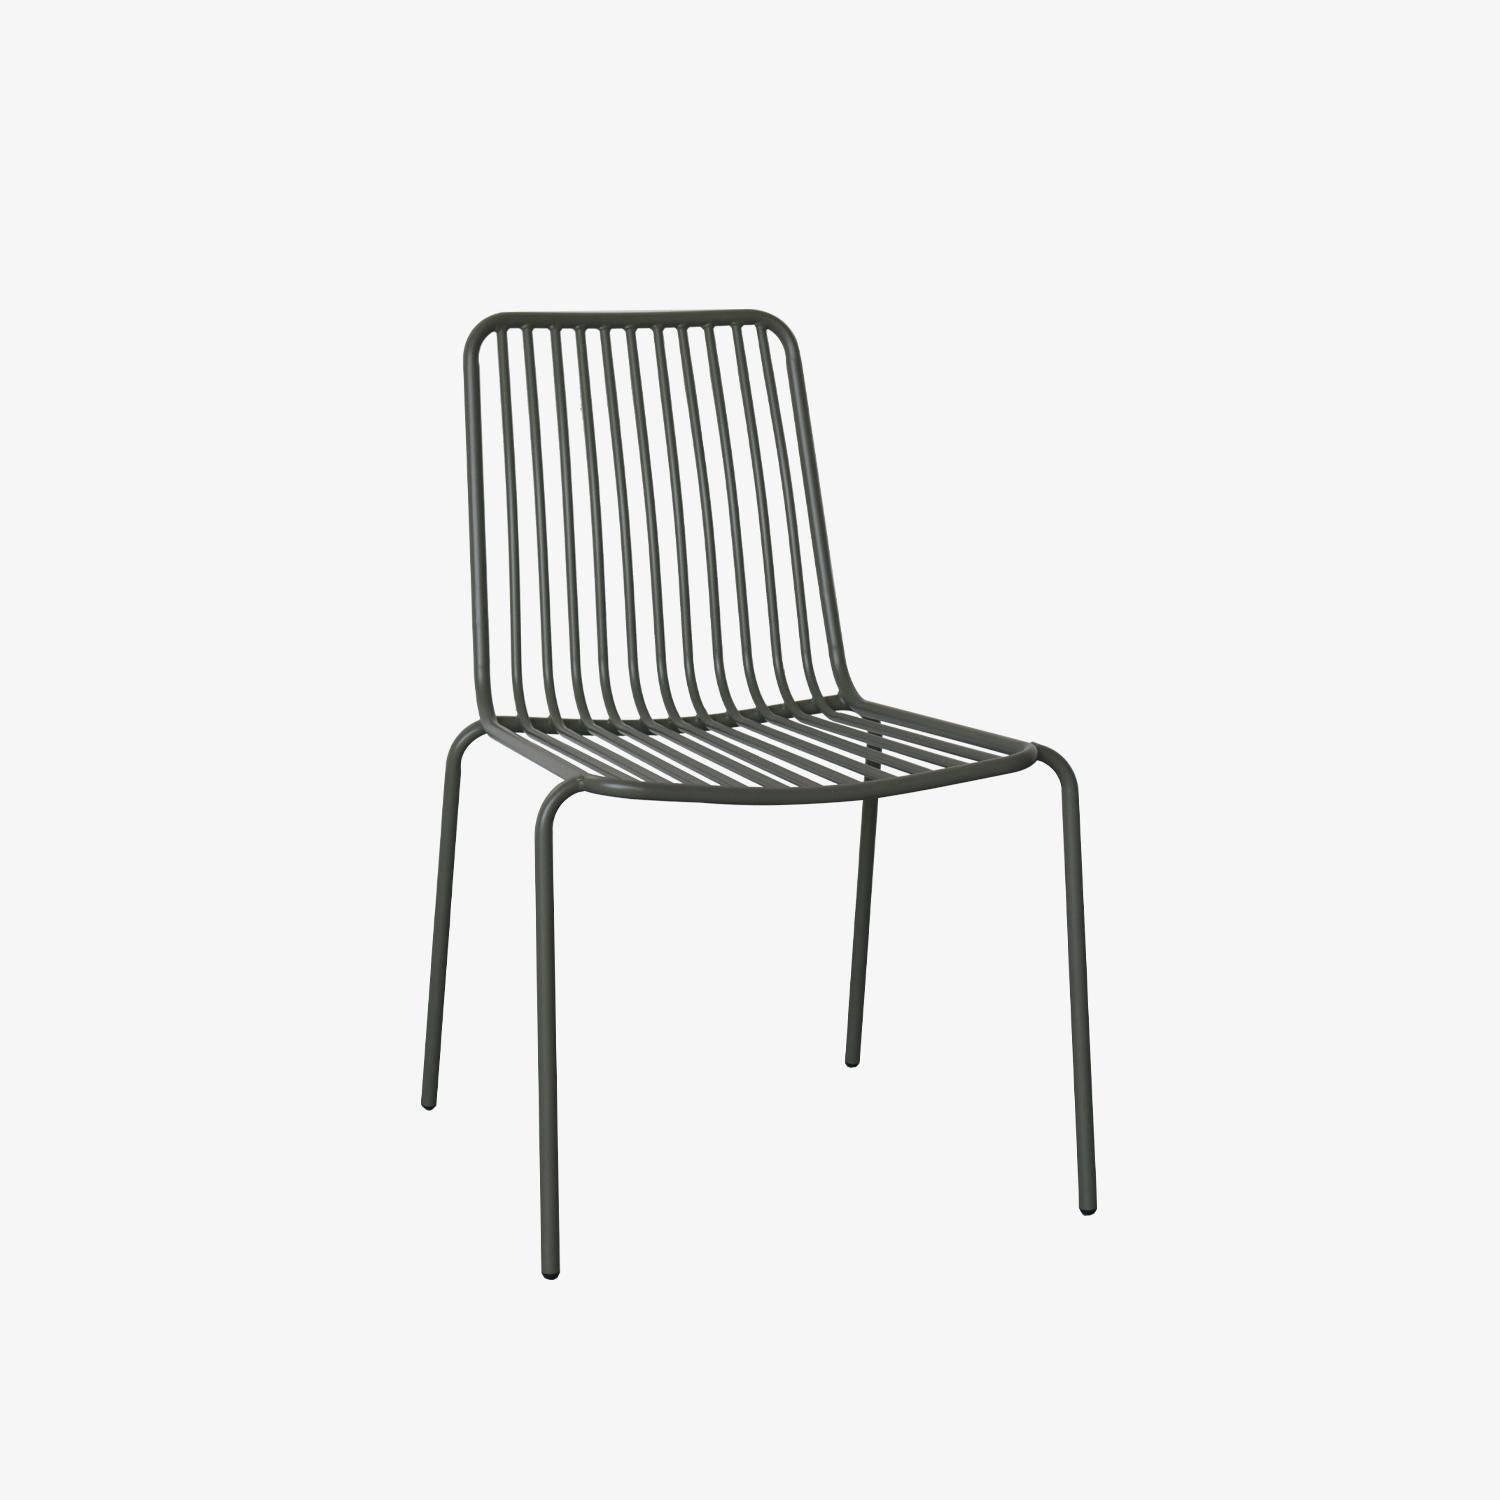 Lot de 2 chaises de jardin en acier anthracite , empilables, design linéaire ,sweeek,Photo4